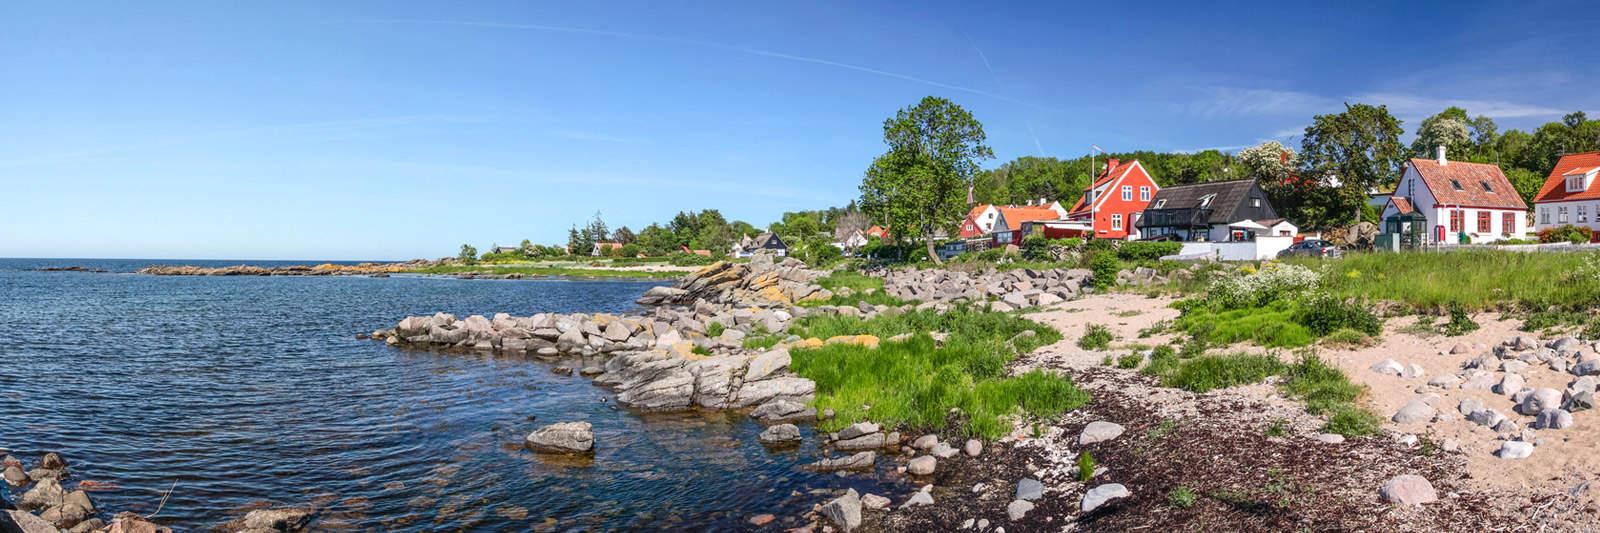 95 Ferienwohnungen und Ferienhäuser auf Hindsholm - tourist-online.de